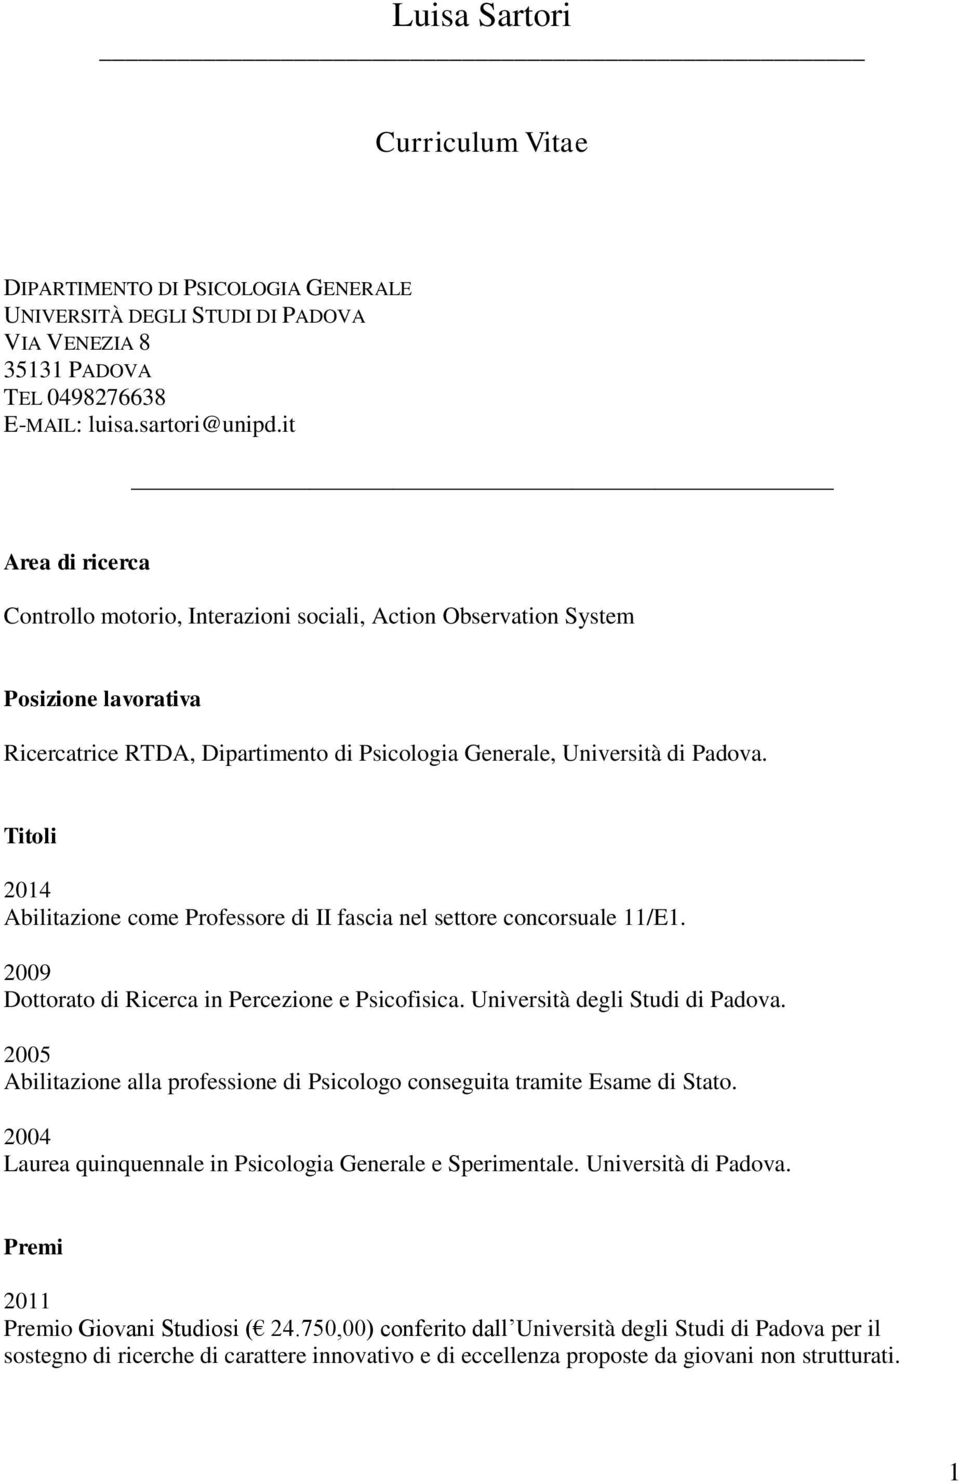 Titoli 2014 Abilitazione come Professore di II fascia nel settore concorsuale 11/E1. 2009 Dottorato di Ricerca in Percezione e Psicofisica. Università degli Studi di Padova.